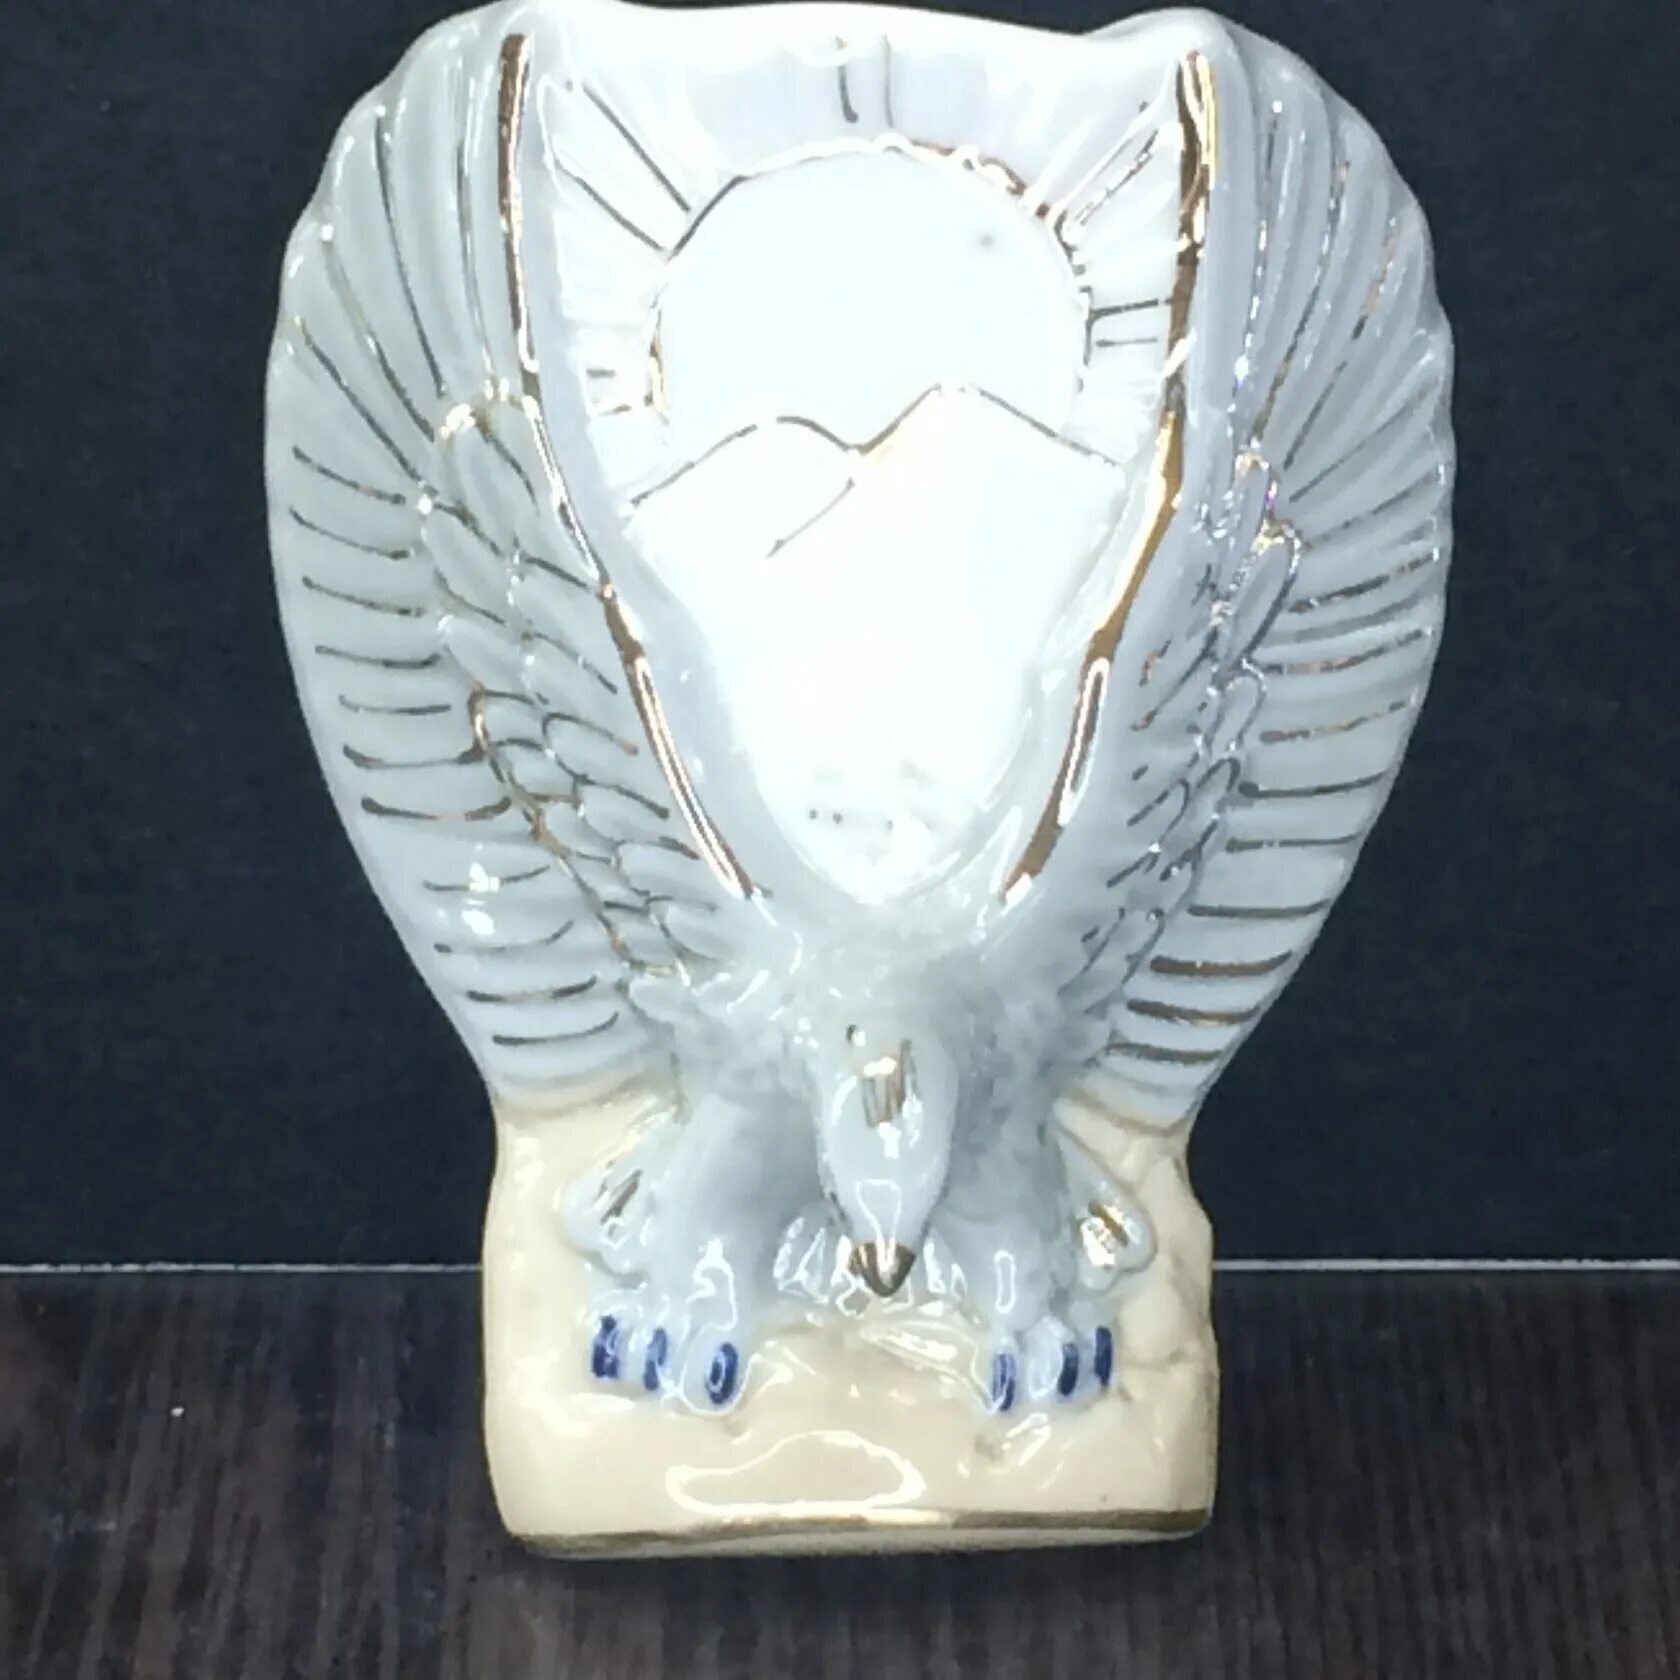 Магнитный Орел. Керамическая сувениры Орел магнит. Купить фигурную вазу в Орле. Купить магнит орел